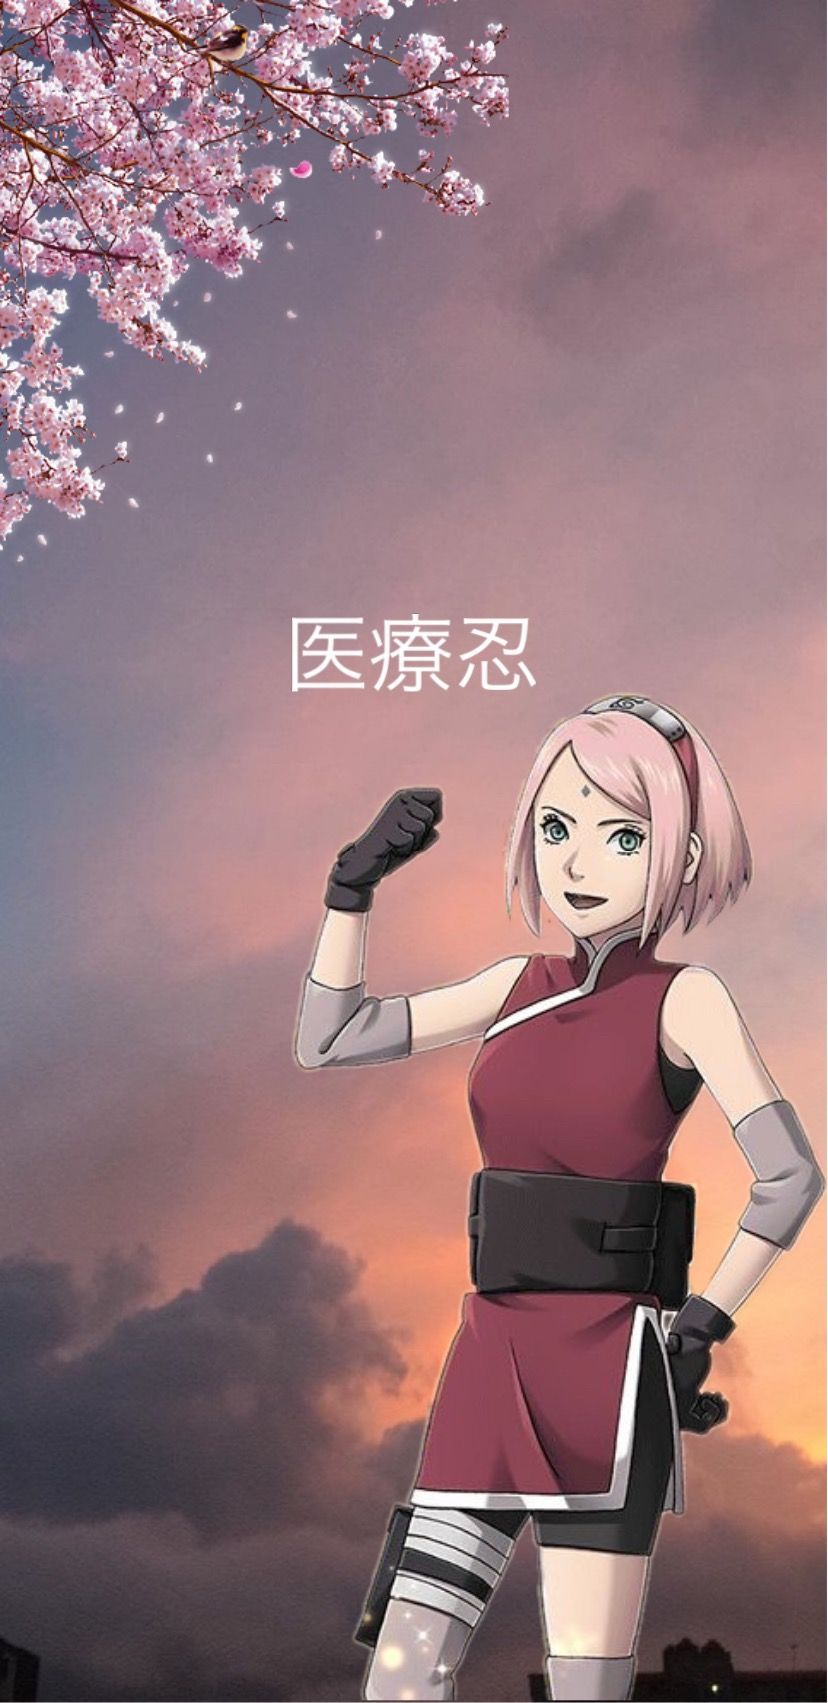 Sakura Wallpaper Naruto